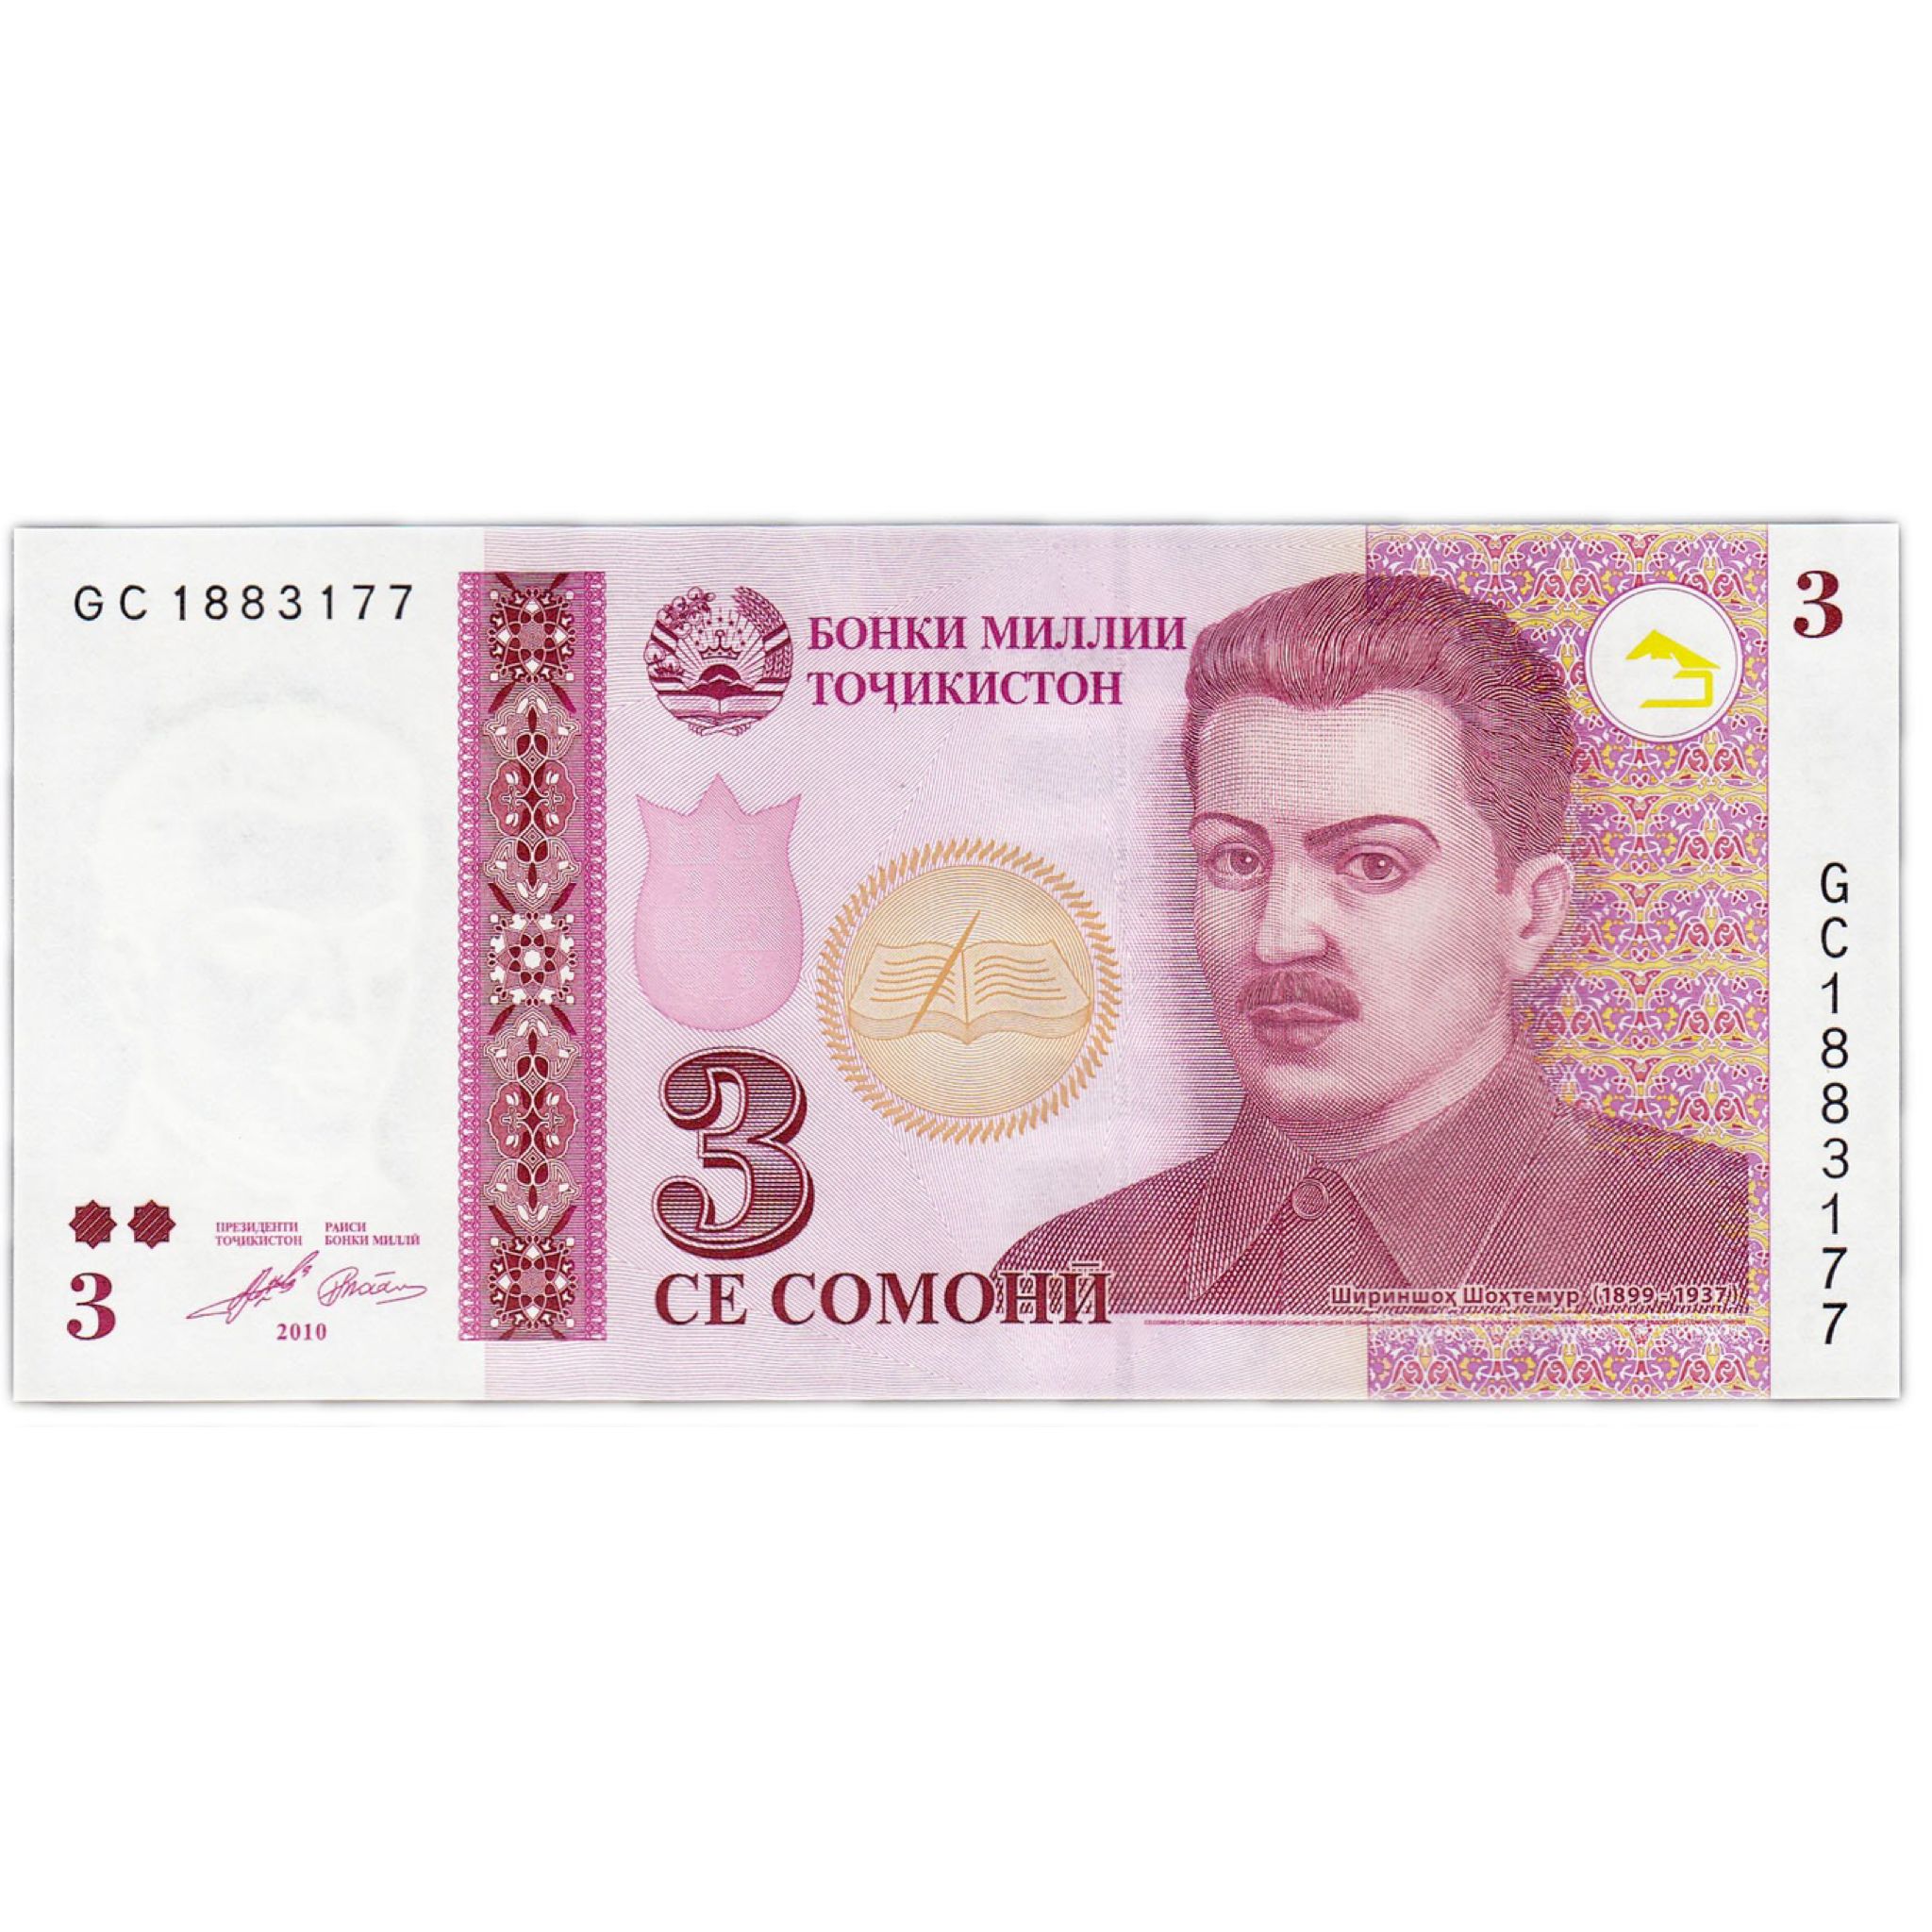 5000 рублей таджикистана на сегодня. Деньги Таджикистана. Купюры Таджикистана. Таджикские банкноты. Денежные купюры Таджикистана.